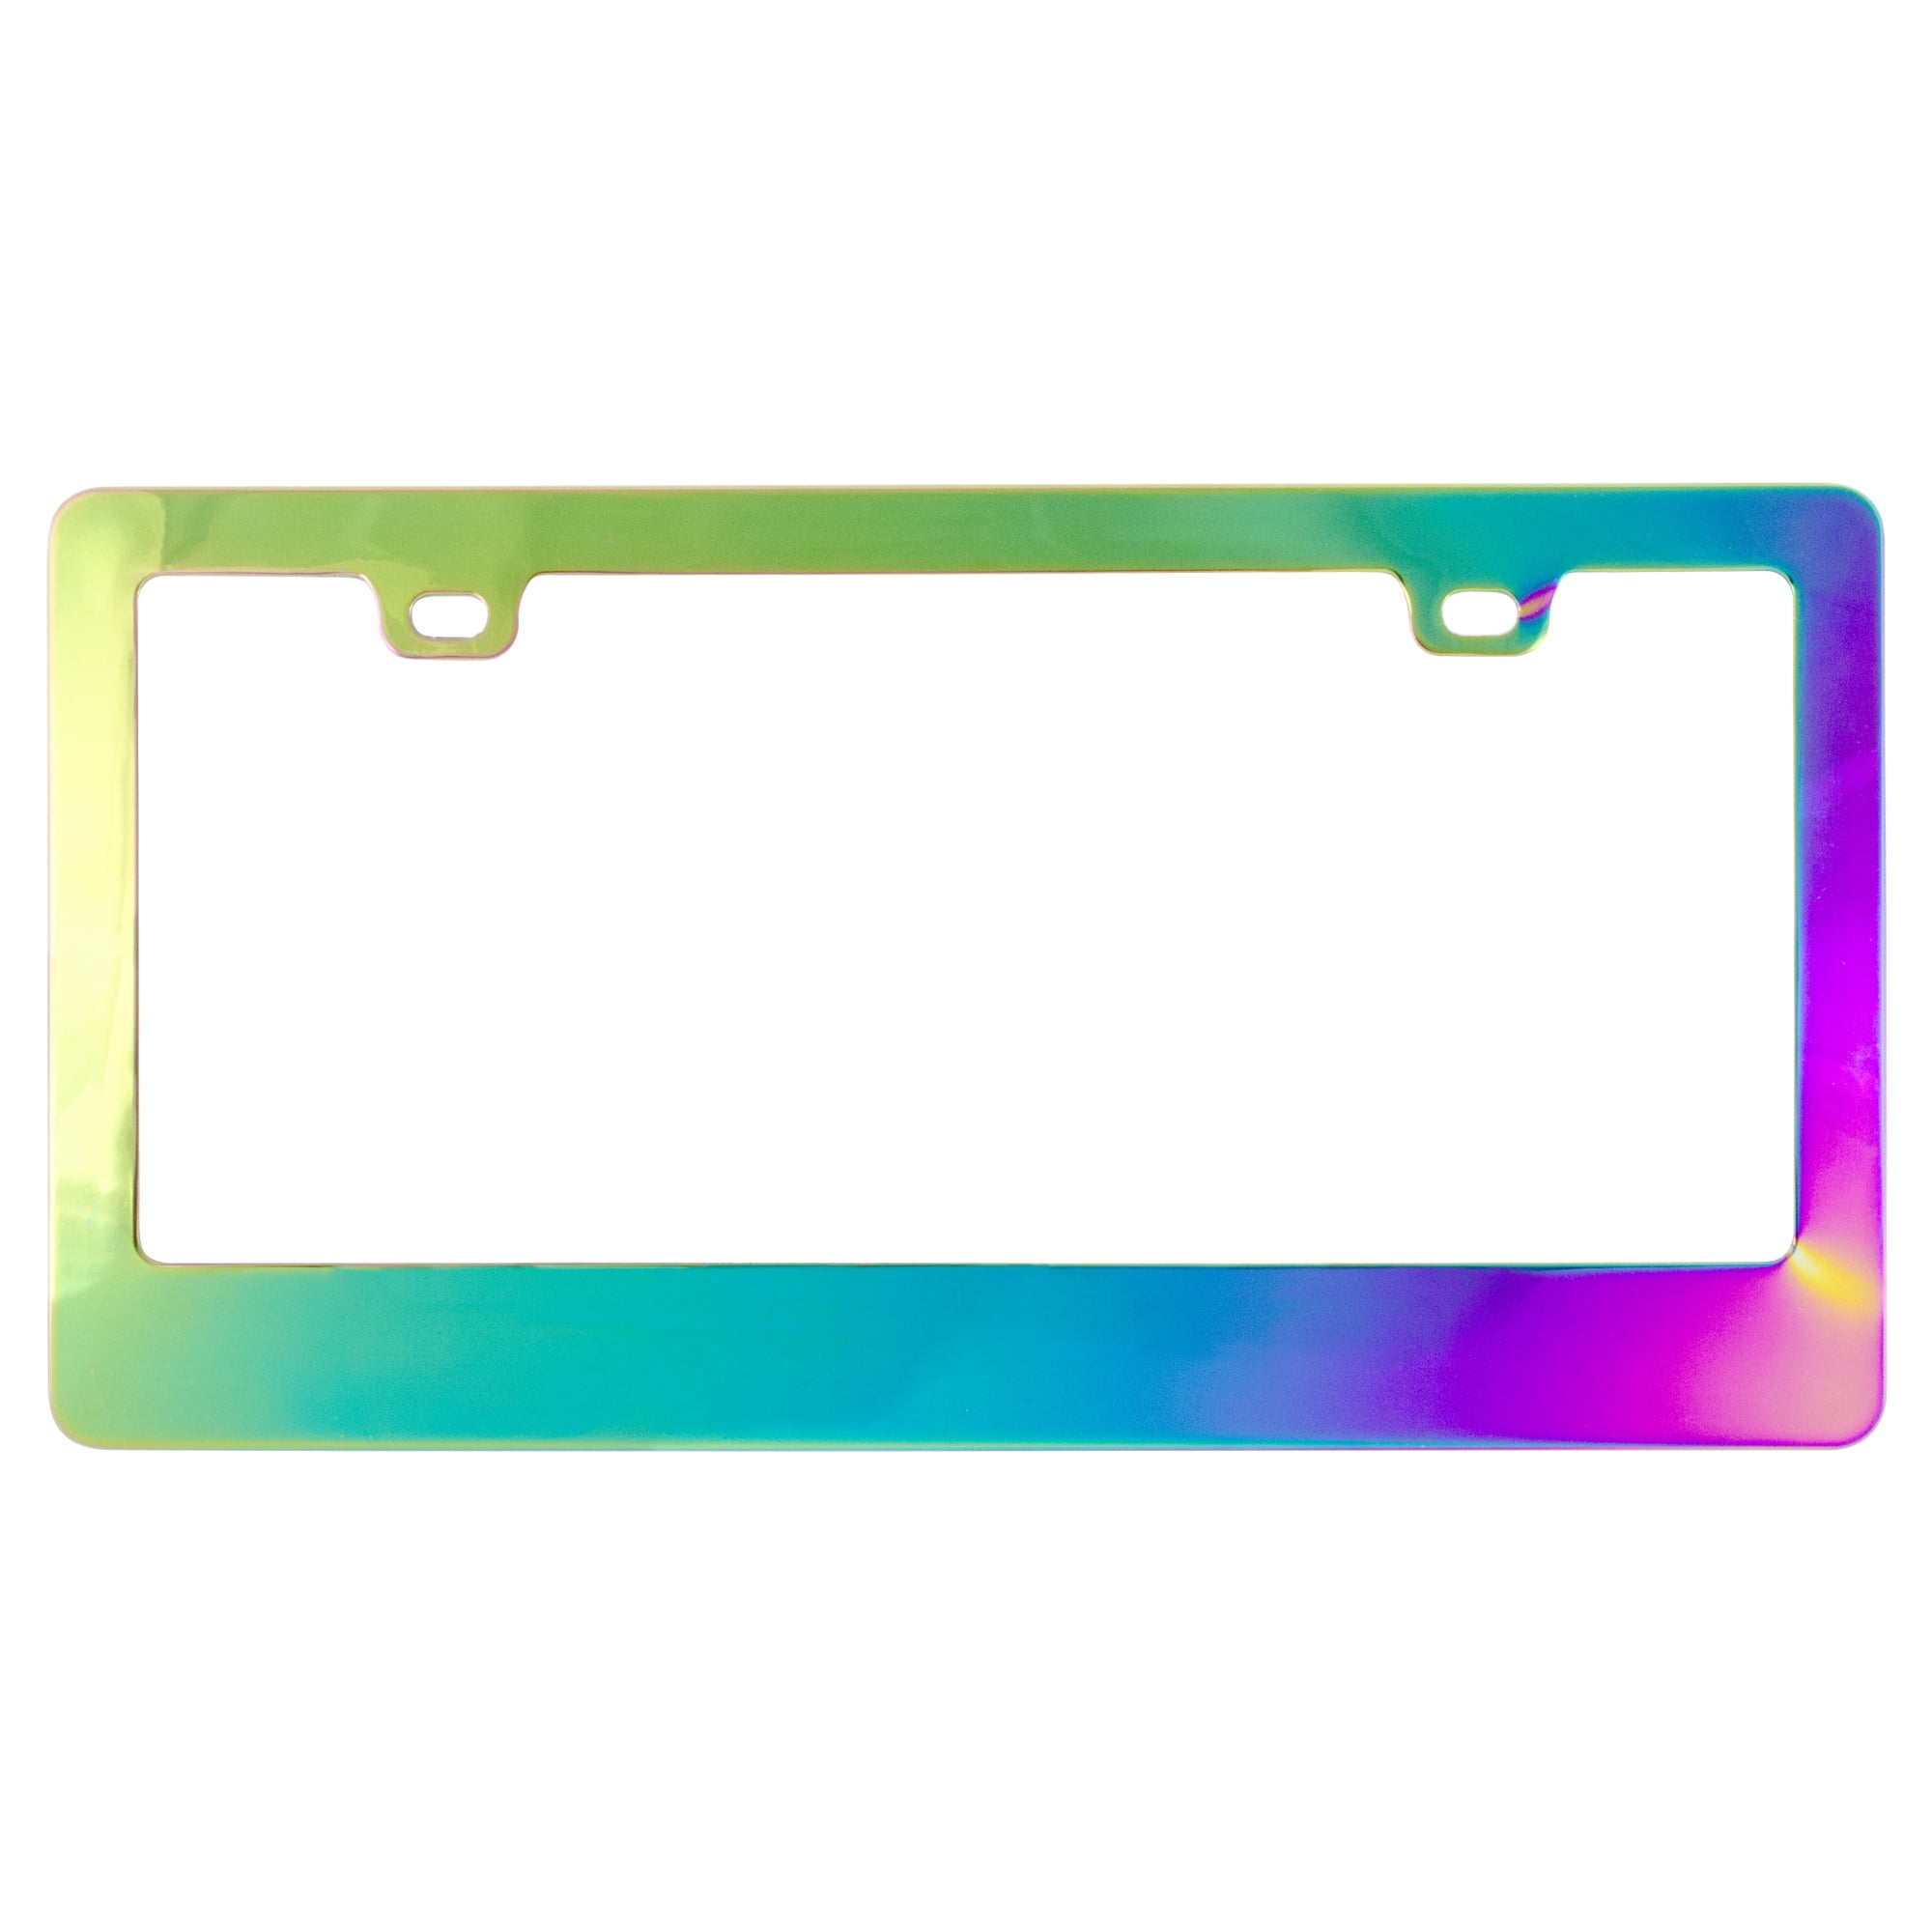 1 Estodian Blue Burnt Rainbow Chameleon Colorful Rline Car License Plate Tag Holder Frame for Volkswagen R Line 304 Stainless Steel 